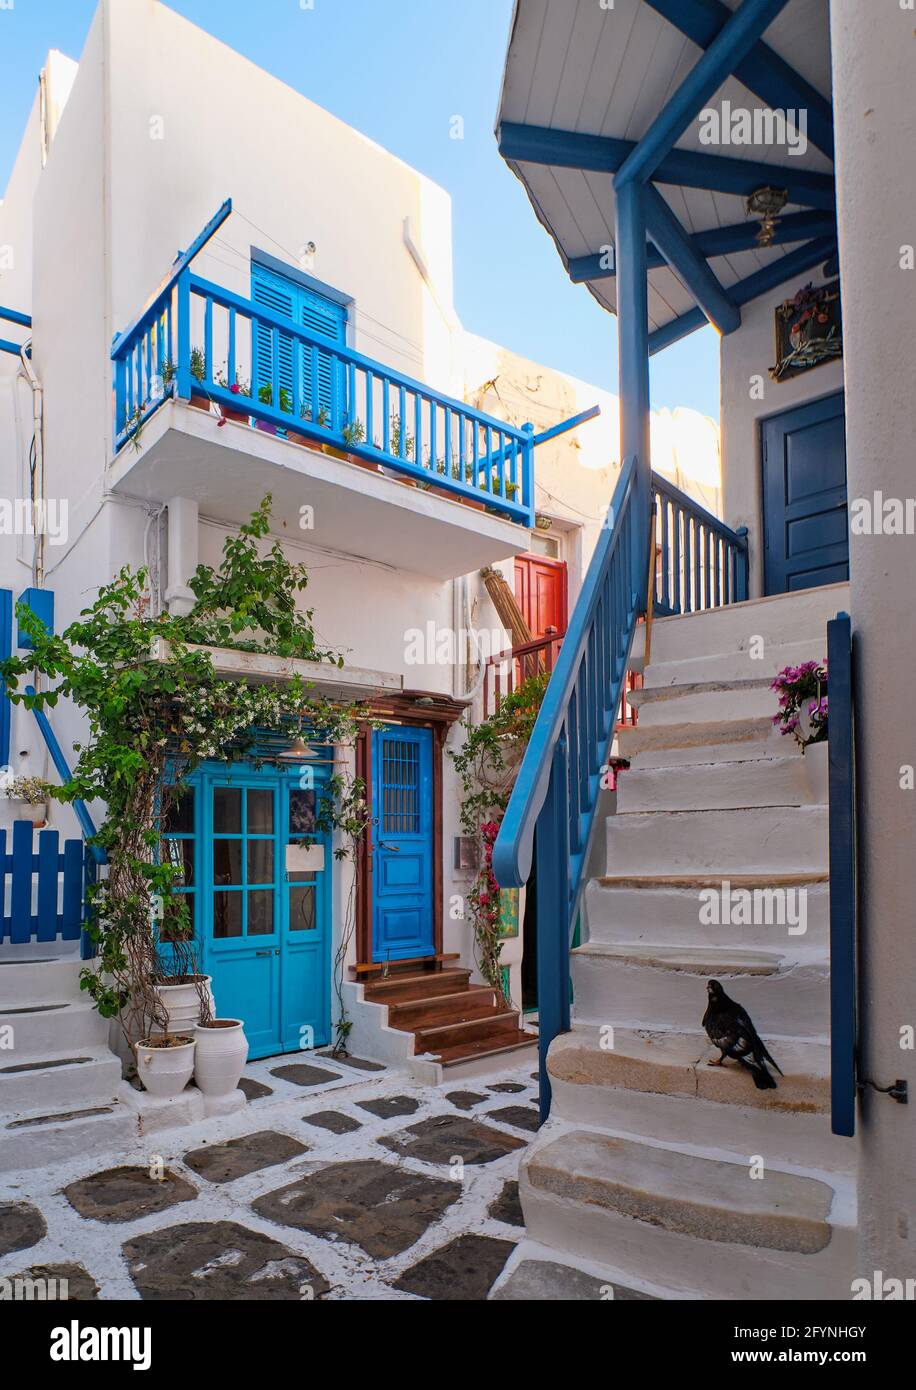 Traditionelle enge gepflasterte Straßen, wunderschöne Gassen griechischer Inselstädte. Weiße Häuser, Blumentöpfe, blaue Balkone und Türen. Mykonos, Griechenland Stockfoto